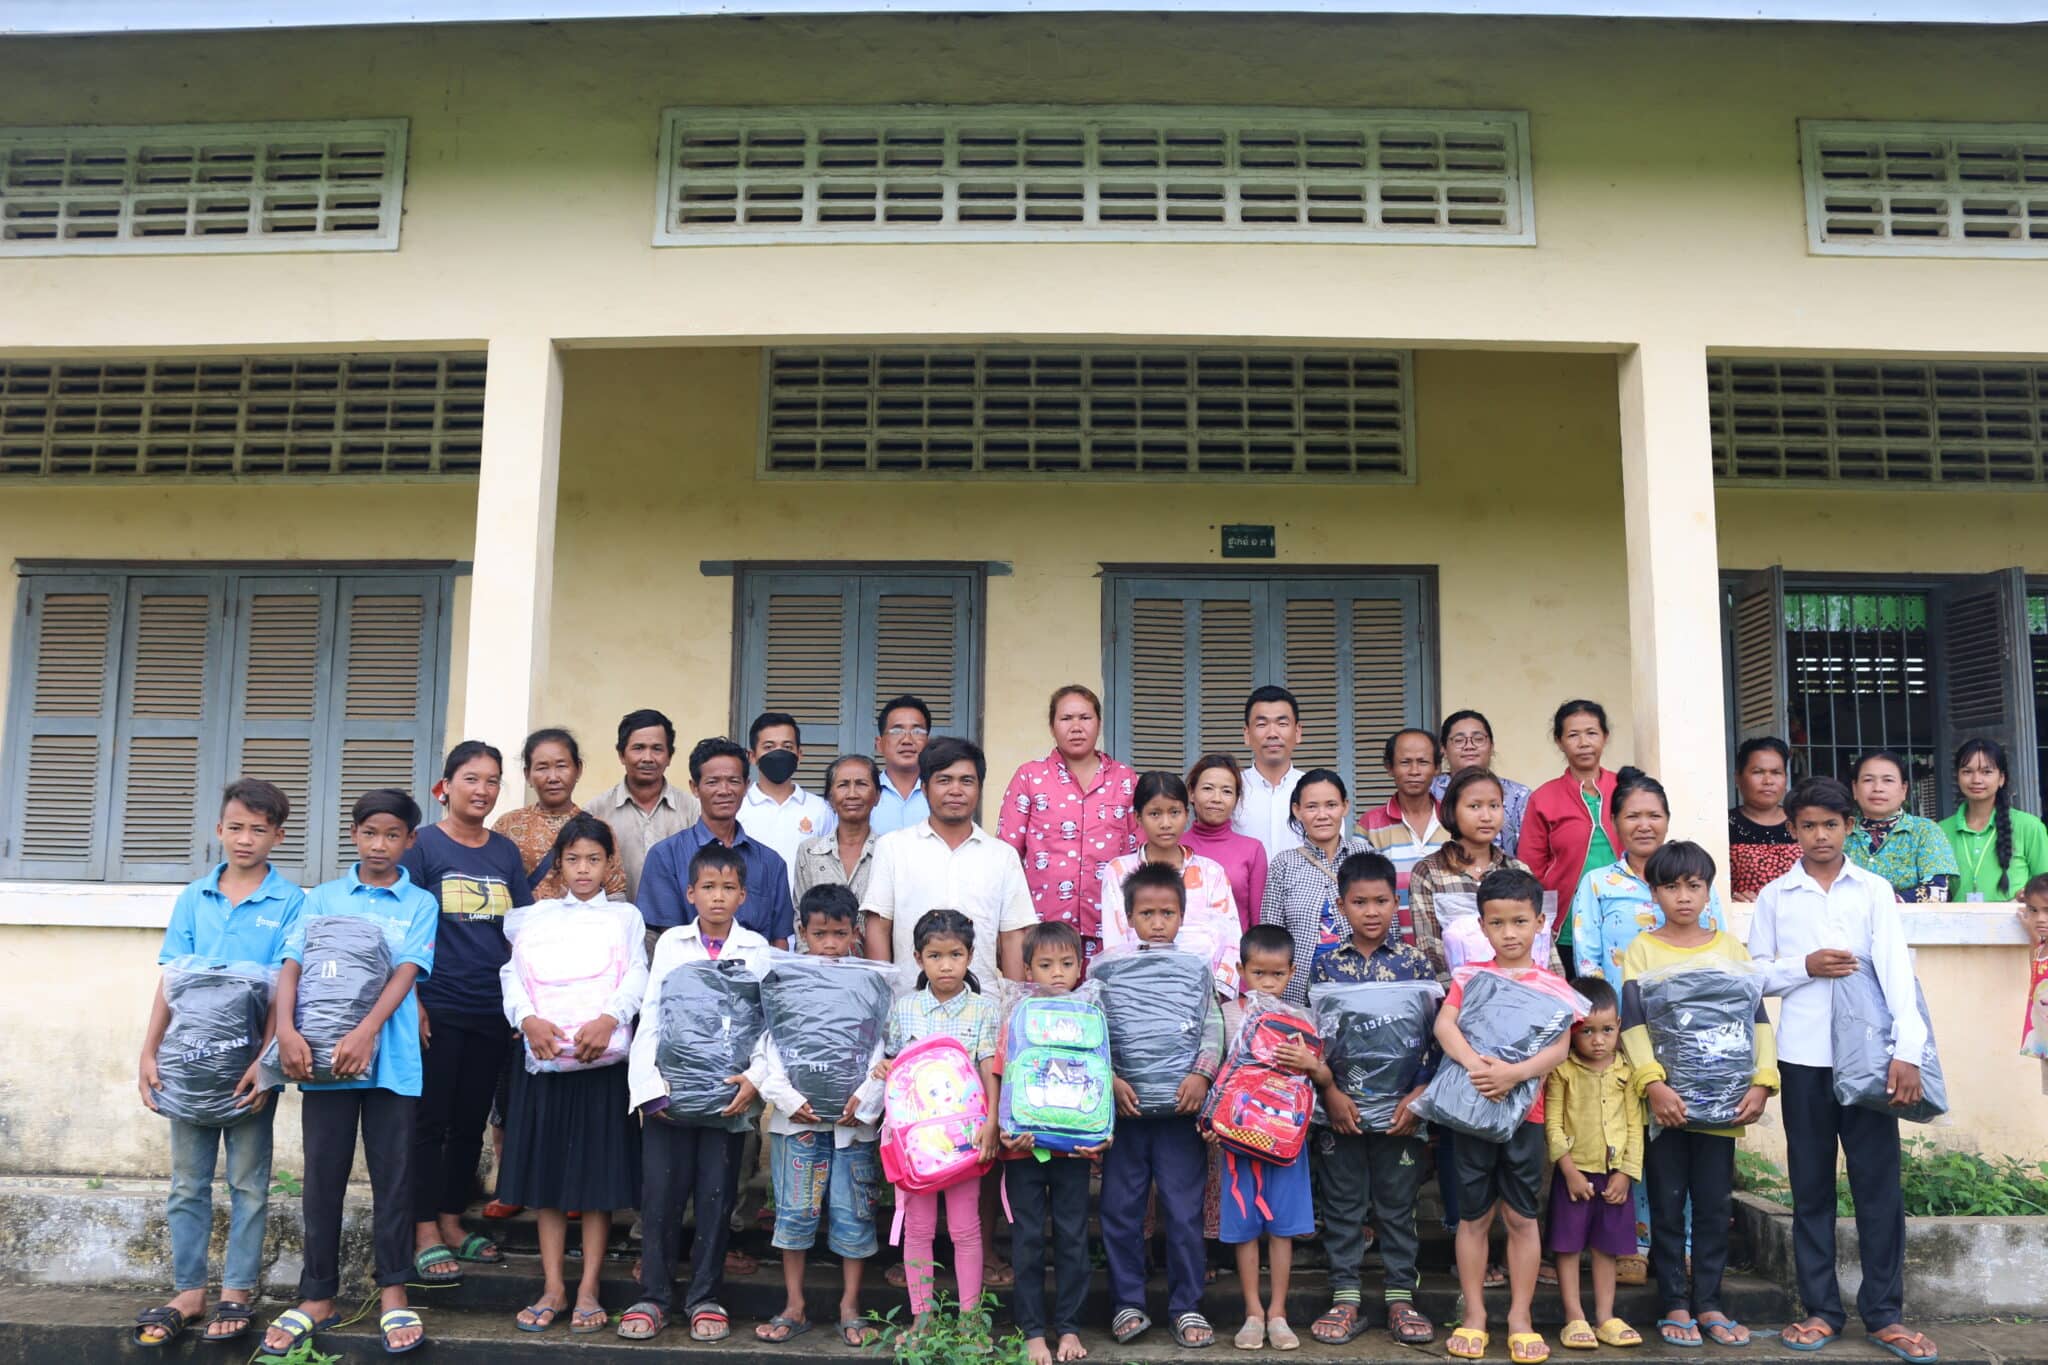 Community volunteer work strengthens children’s literacy in Cambodia